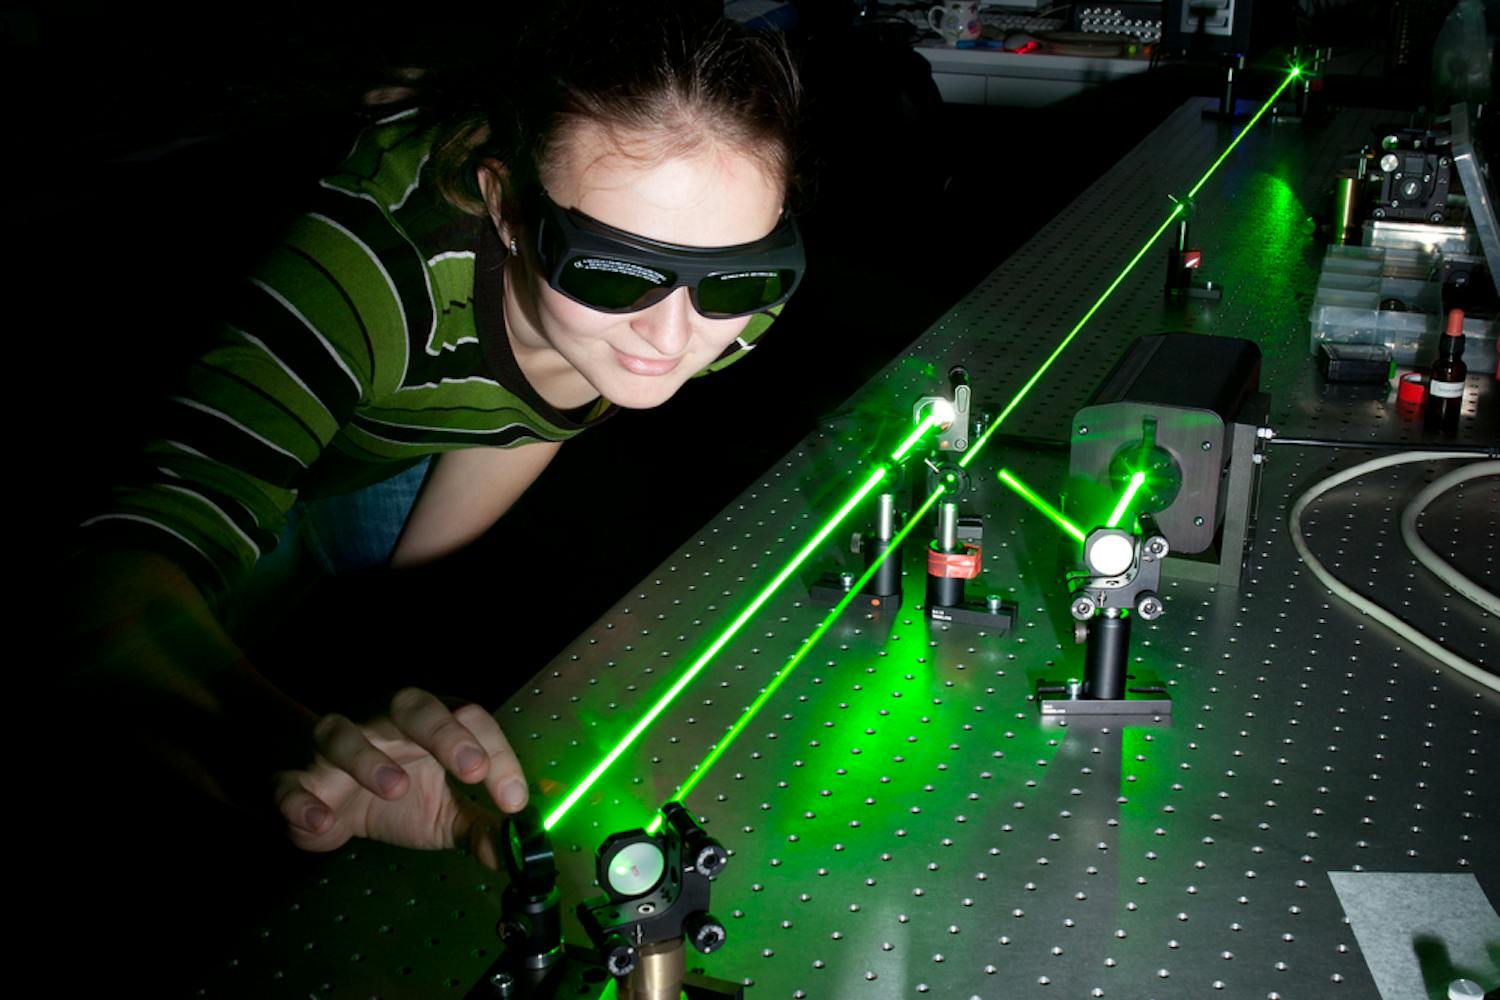 Jente med sikkerhetsbriller ser på grønn laserstråle og justerer refleksjonen til strålen